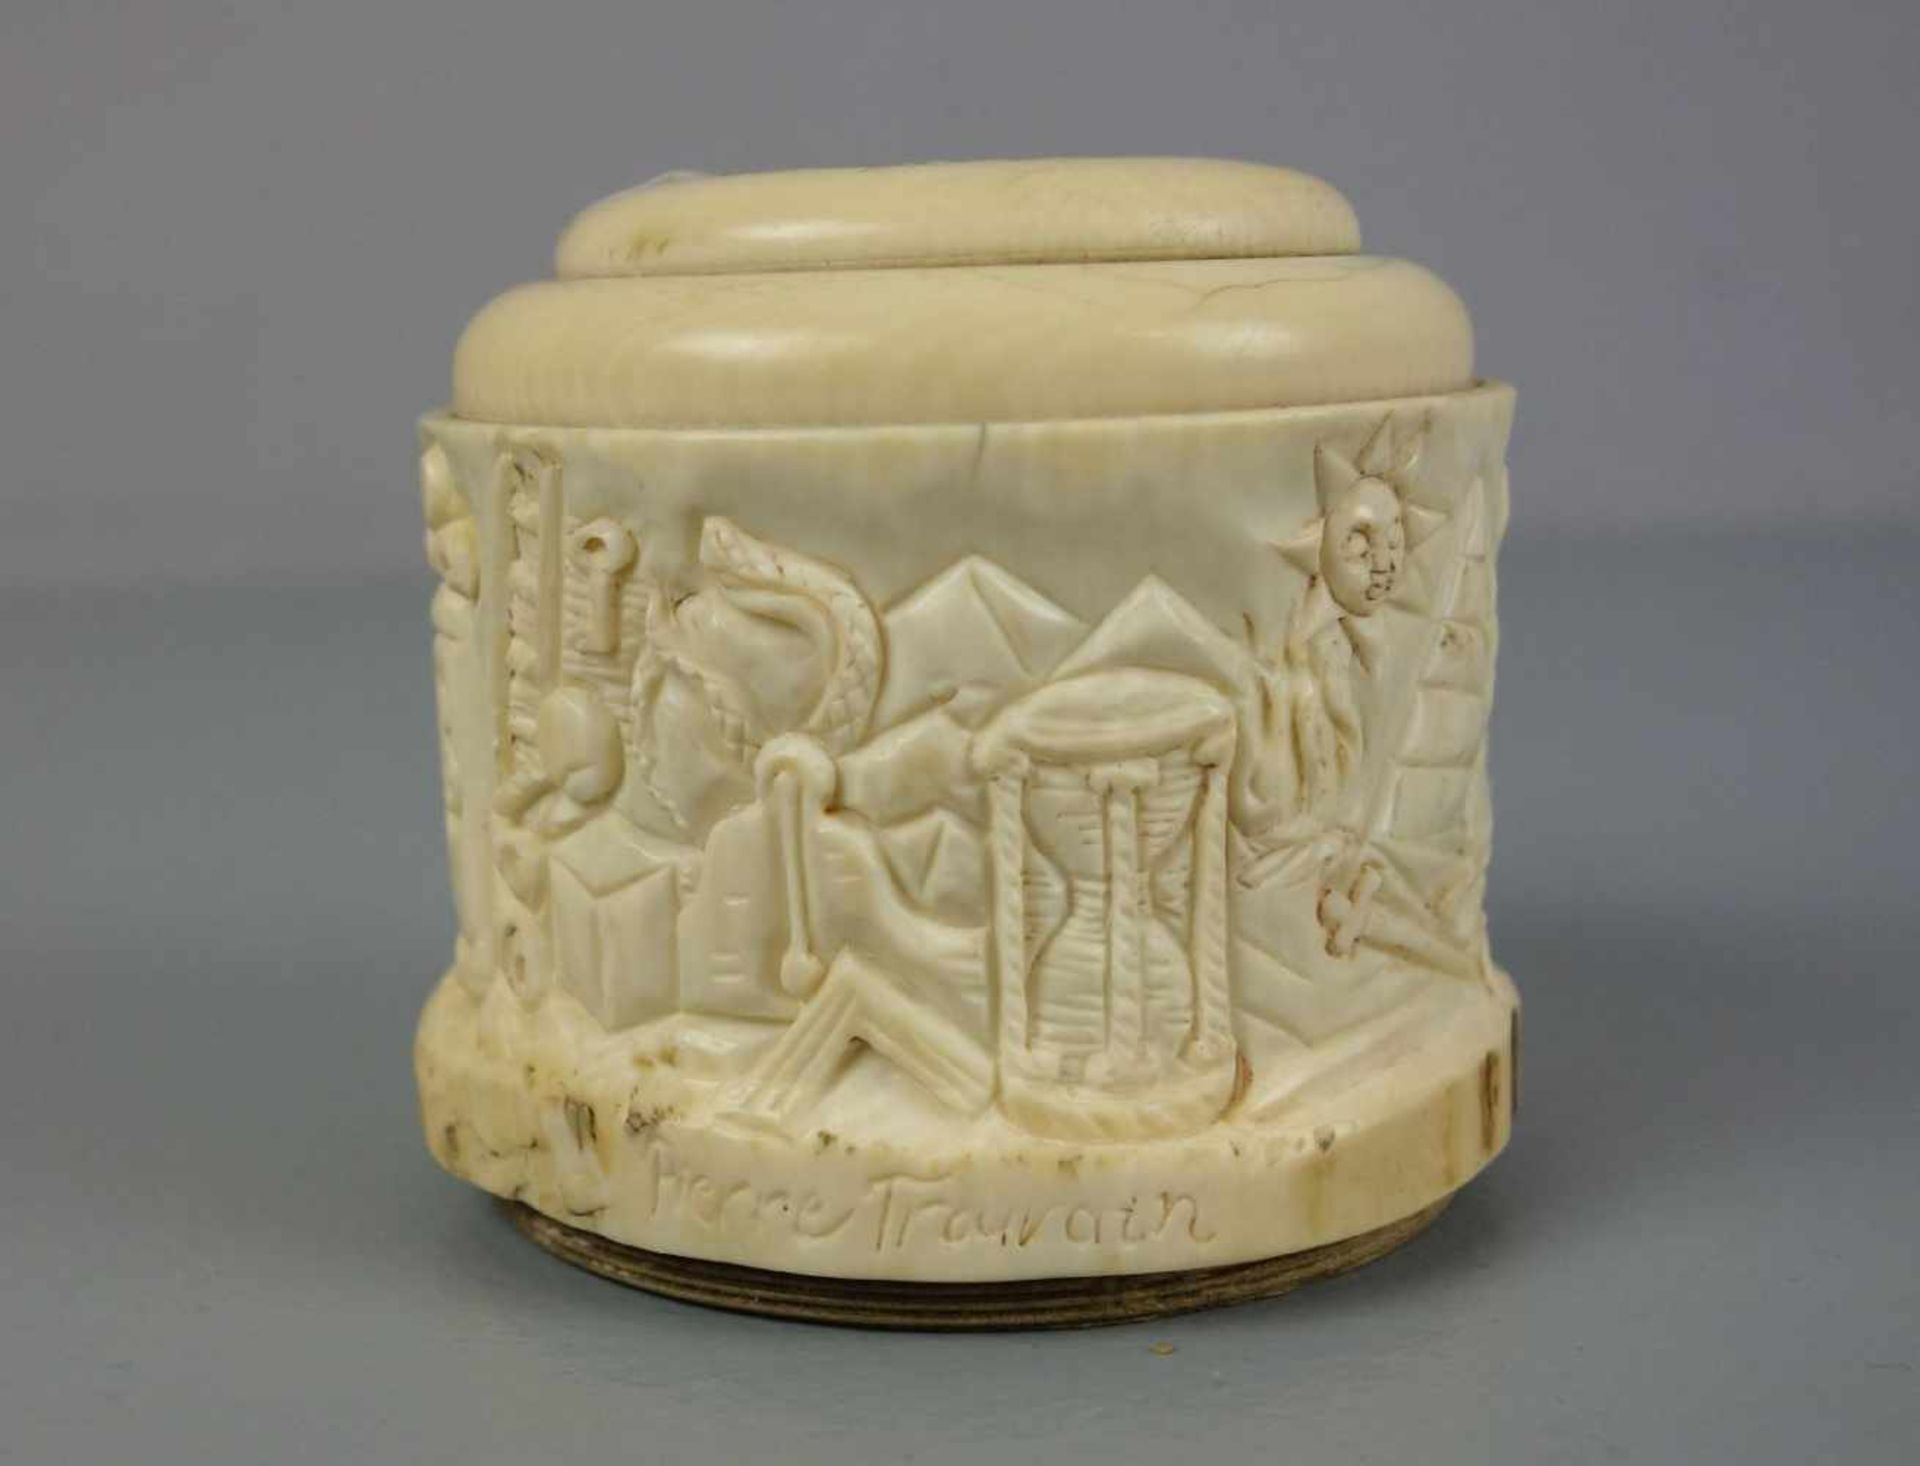 FREIMAURER SPARDOSE / masonic money box, 19. Jh., Elfenbein und Holz , Frankreich, datiert "1839" - Image 4 of 5